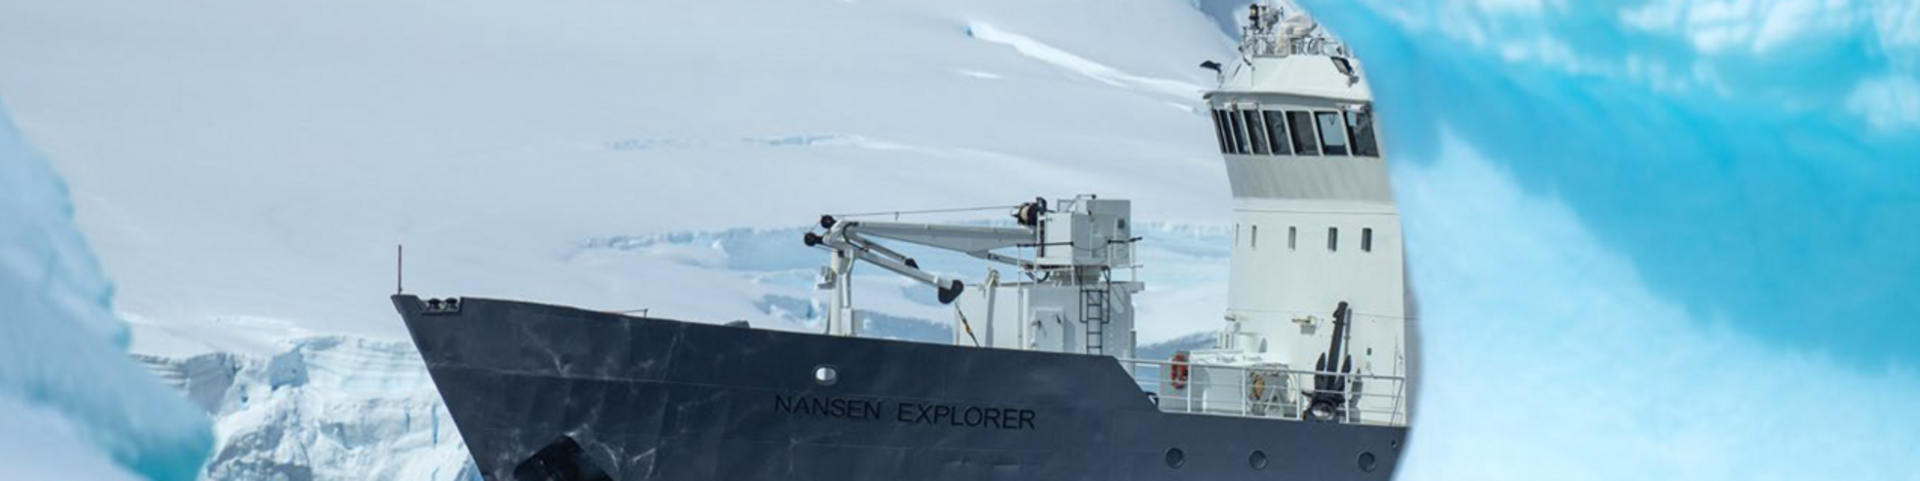 Nansen Explorer in der Antarktis